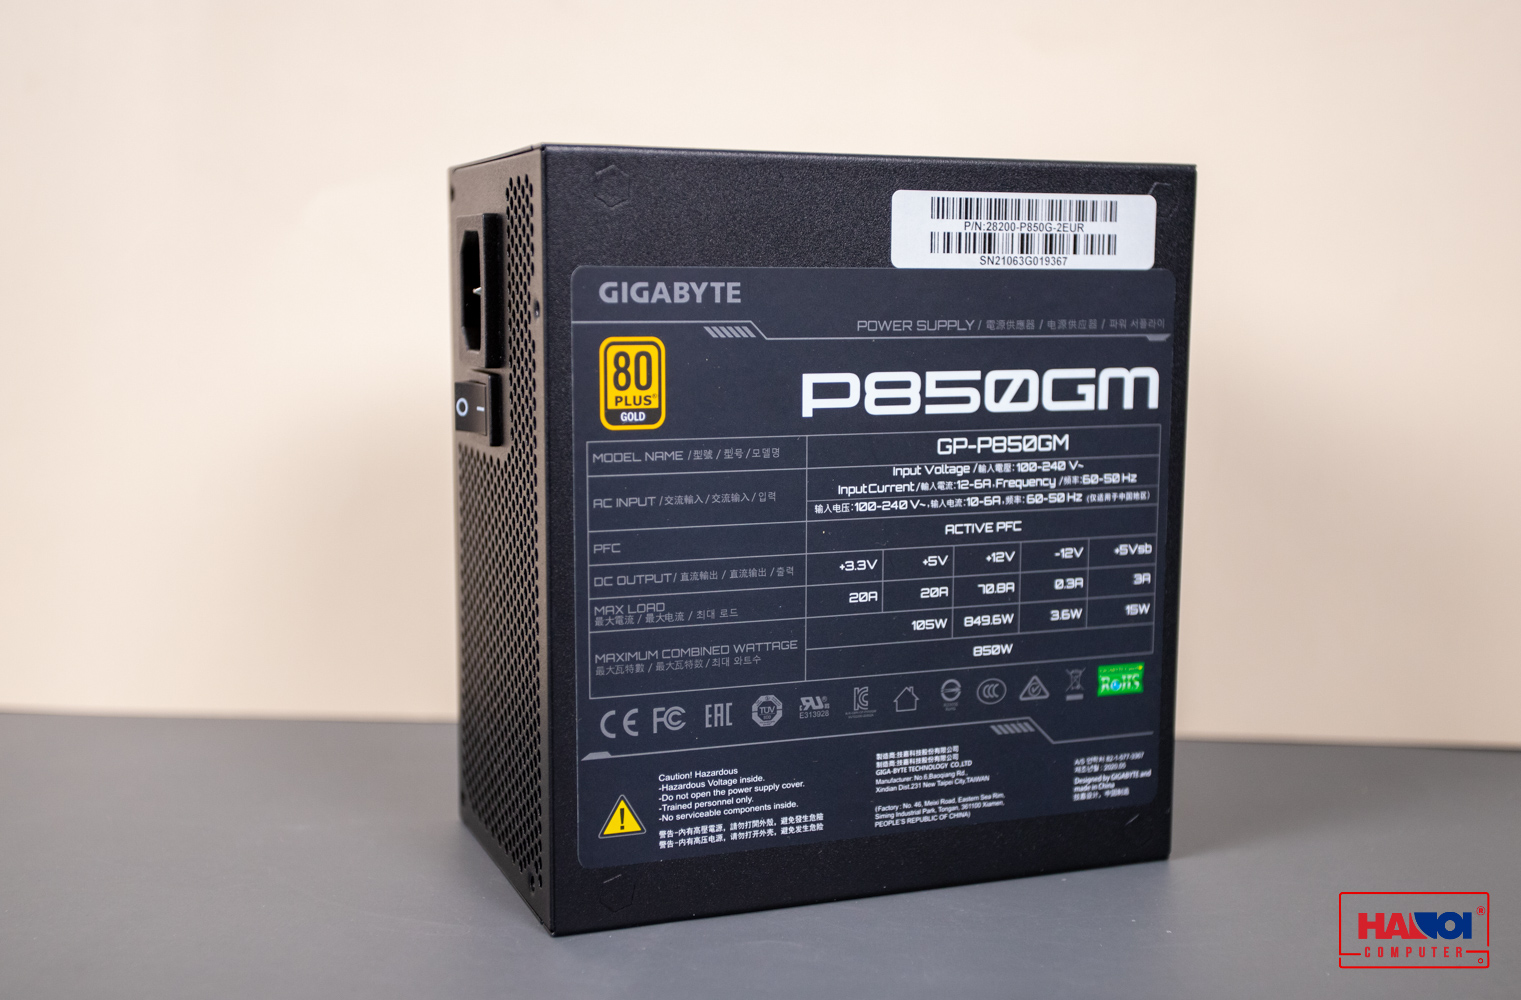 Nguồn Gigabyte GP- P850GM 850W (80 Plus Gold/Full Modular/Màu Đen) giới thiệu 4